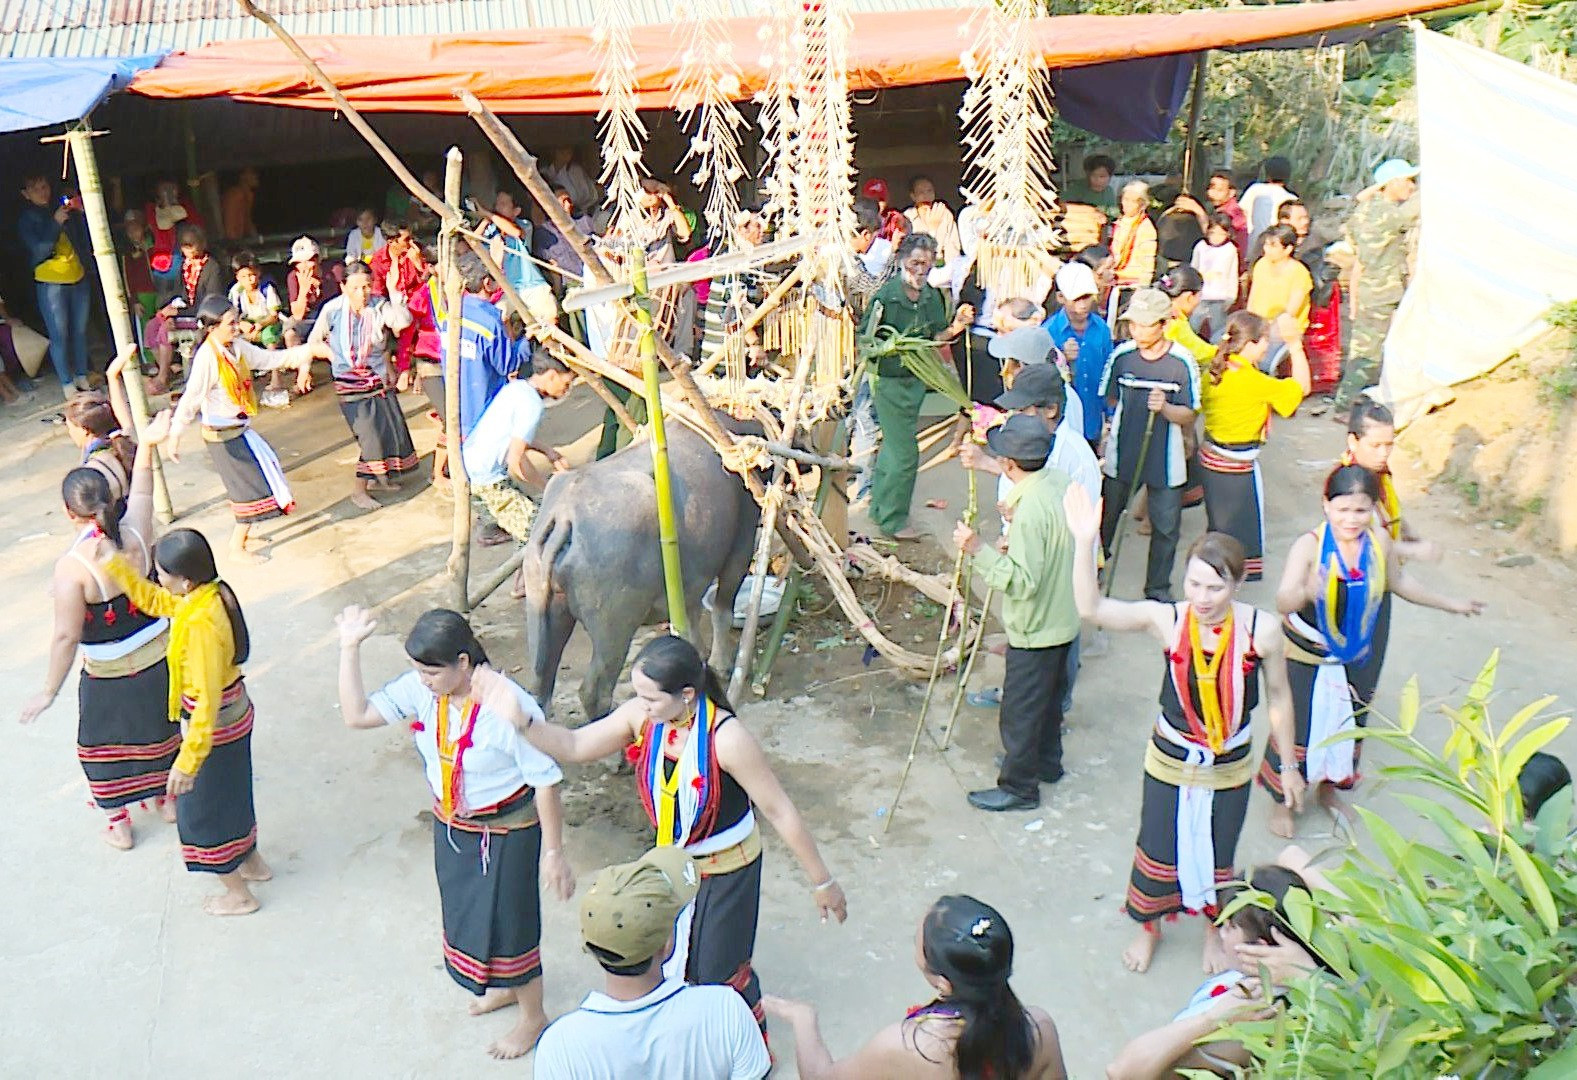 Quang cảnh nhảy múa, hát dân ca quanh cây nêu và trâu hiến tế của người Cadong tại xã vùng cao Trà Bui (Bắc Trà My) trong lễ hội ăn trâu huê. Ảnh: N.Bình